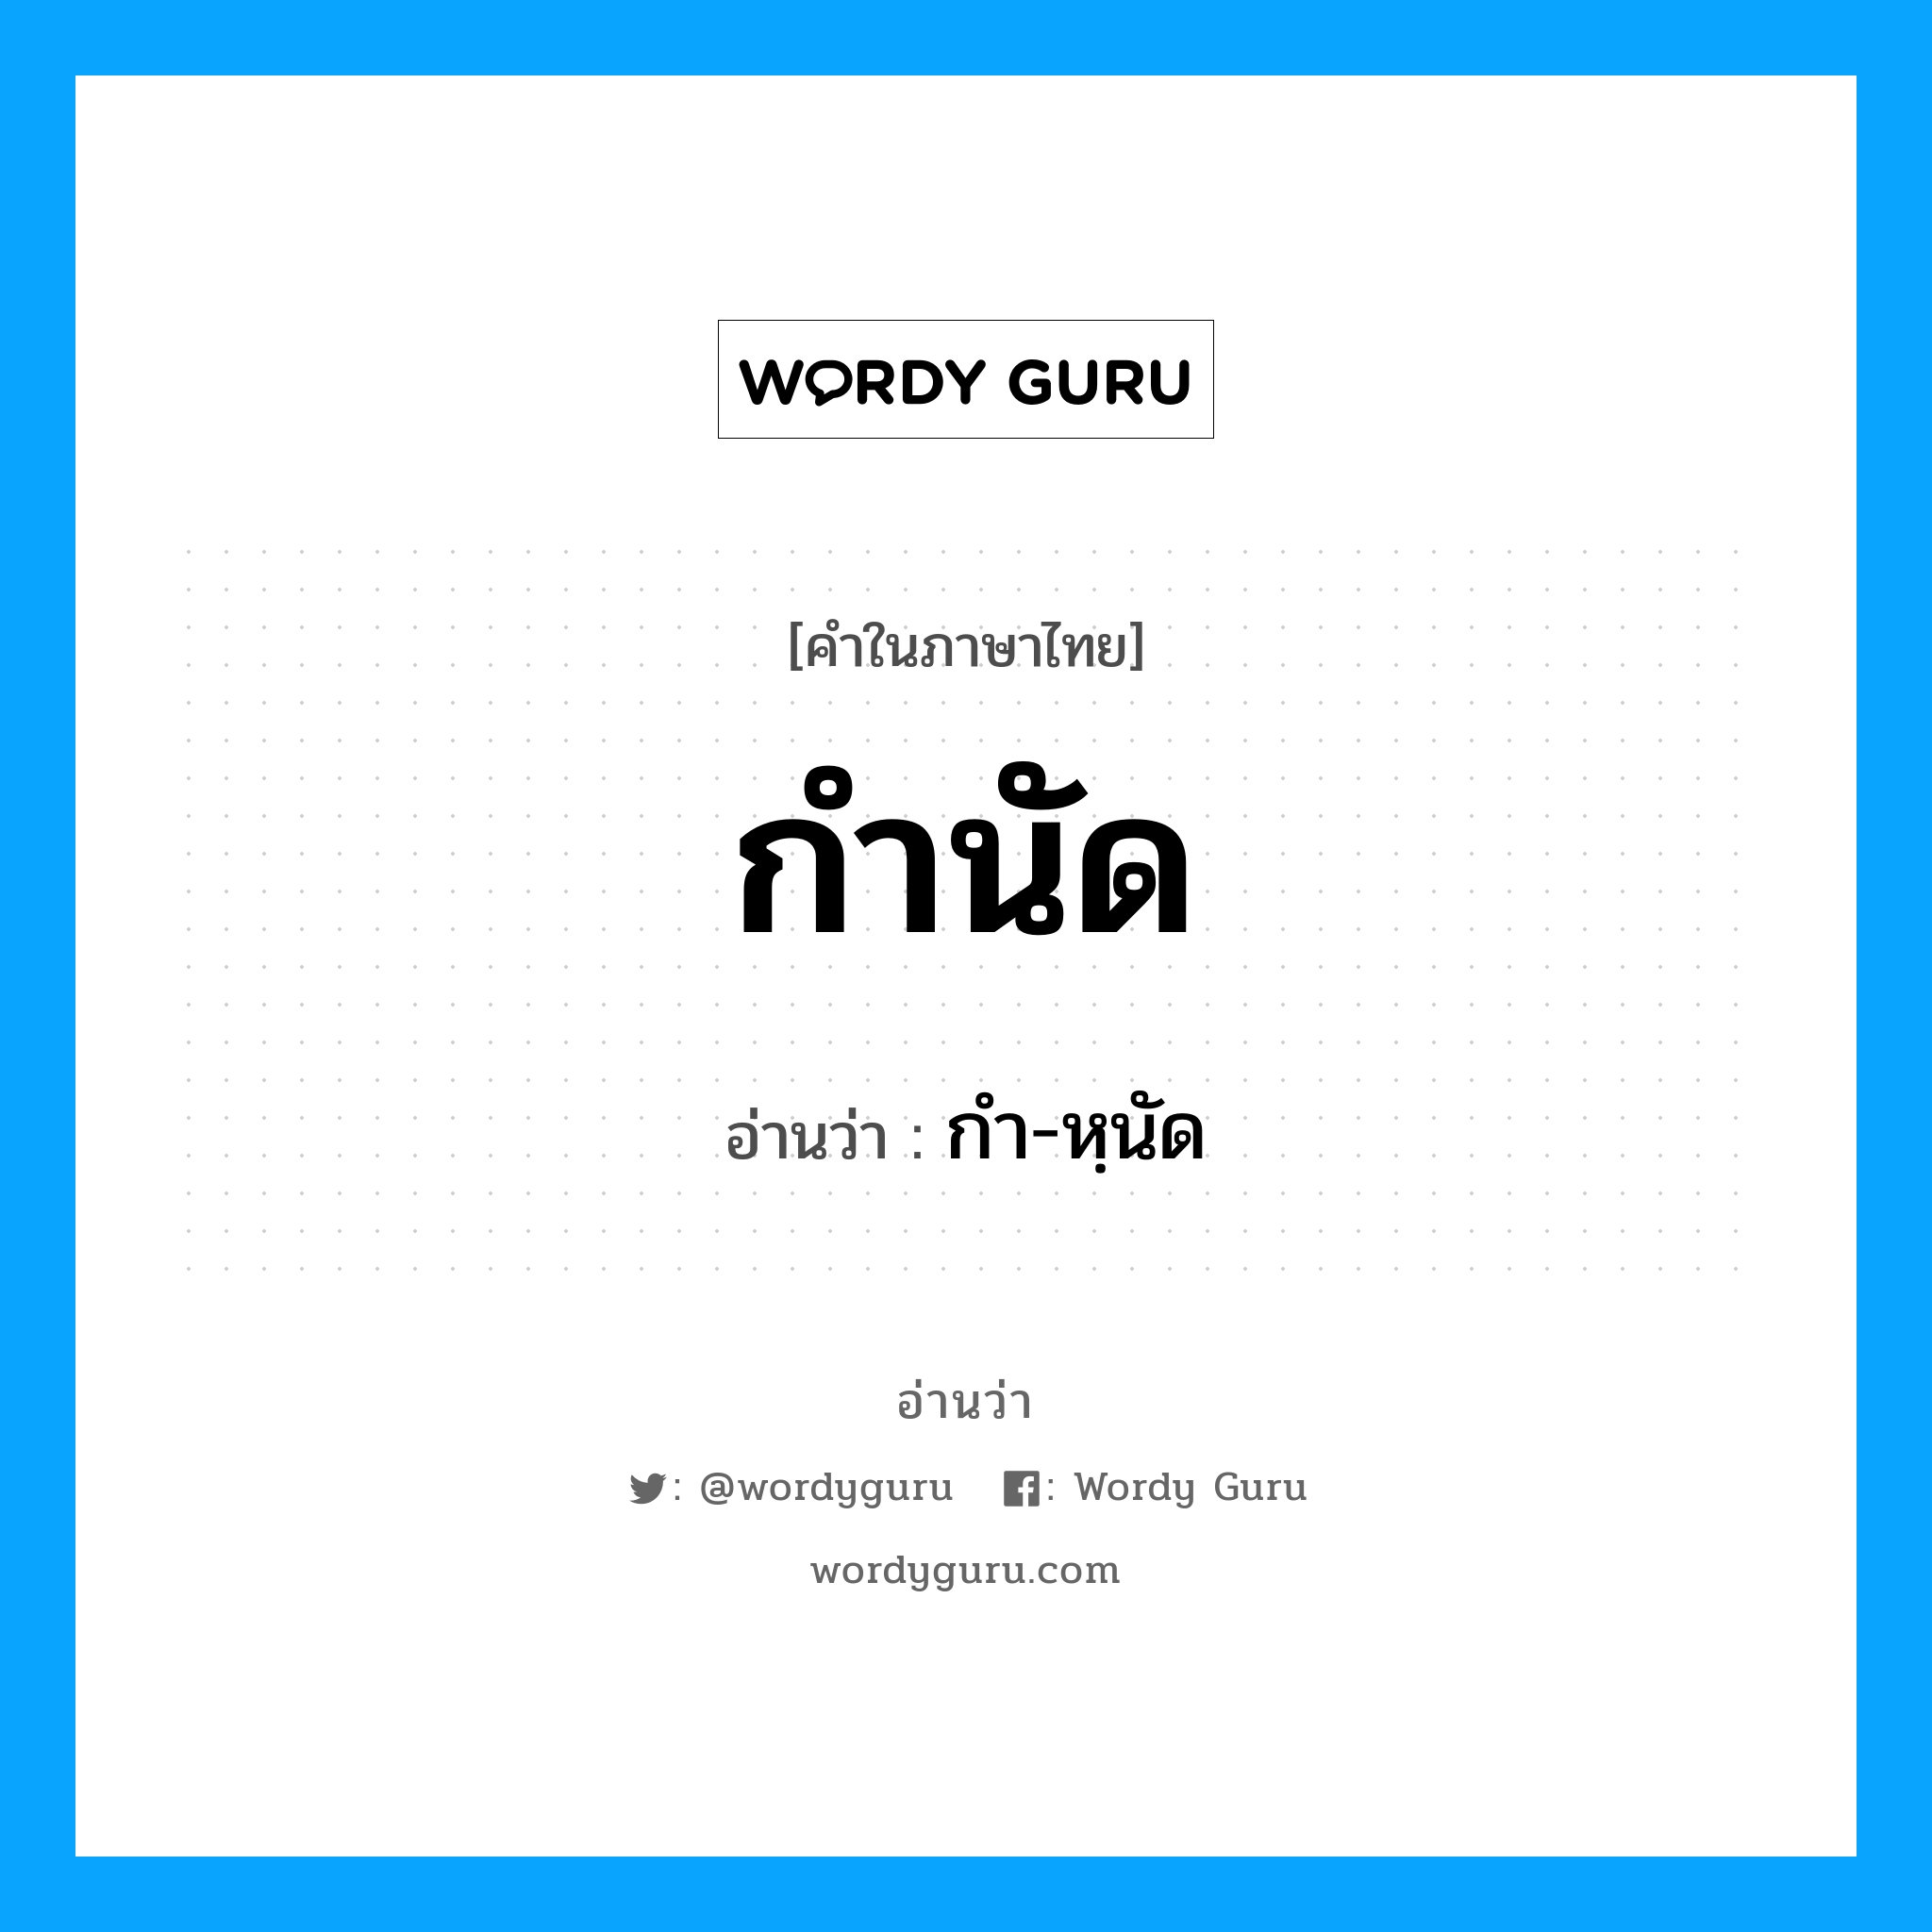 กำ-หฺนัด เป็นคำอ่านของคำไหน?, คำในภาษาไทย กำ-หฺนัด อ่านว่า กำนัด